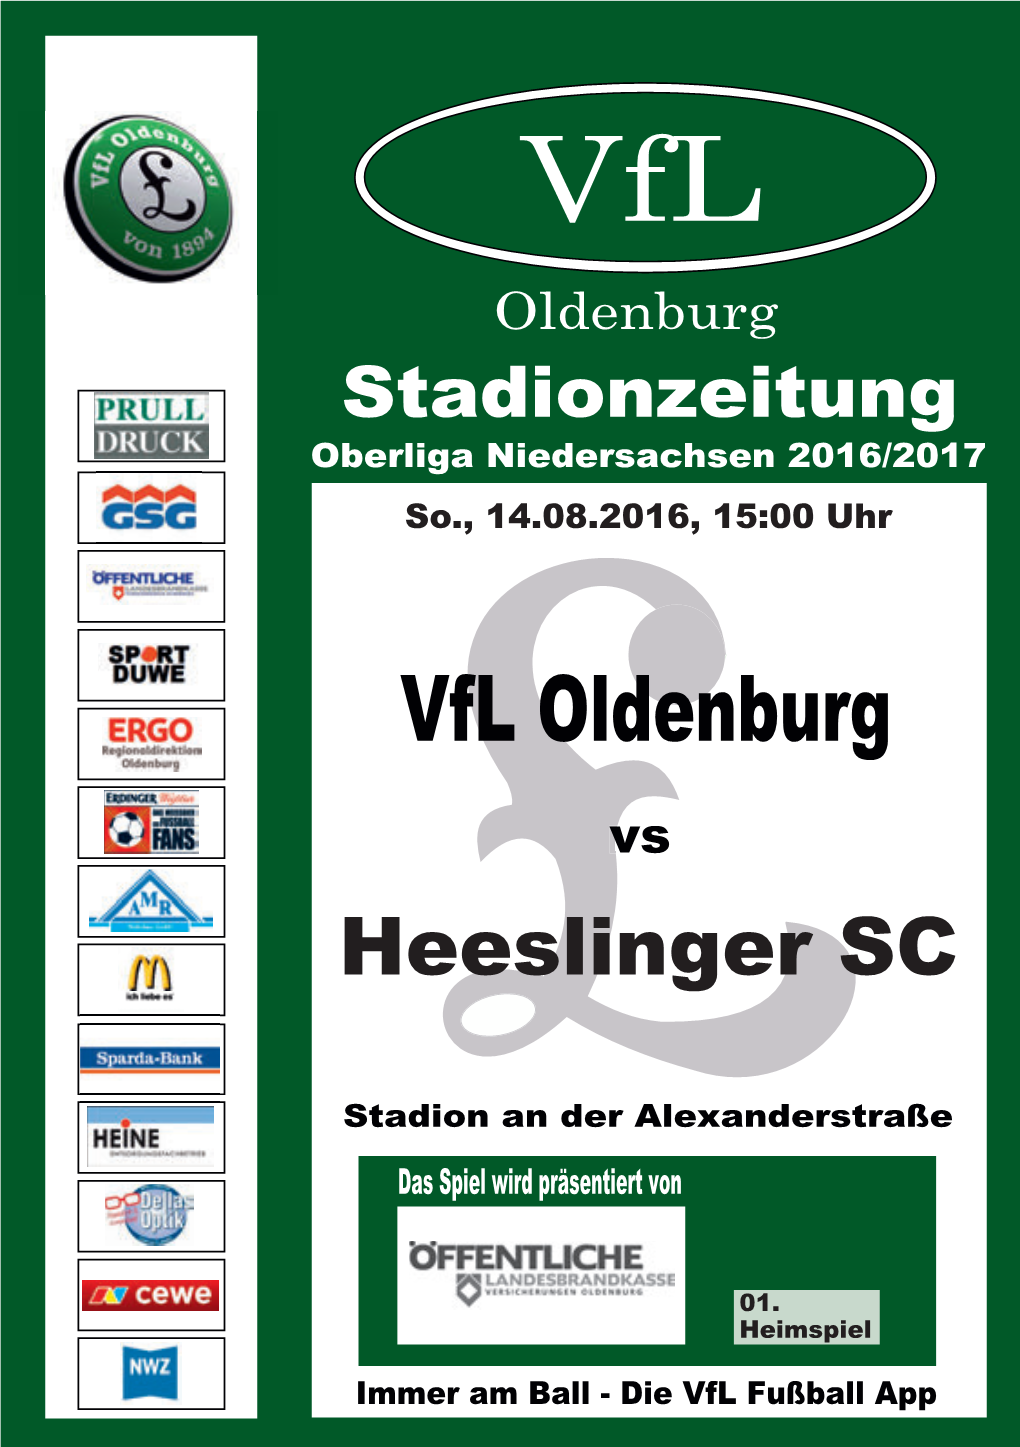 Vfl Oldenburg Stadionzeitung Oberliga Niedersachsen 2016/2017 So., 14.08.2016, 15:00 Uhr